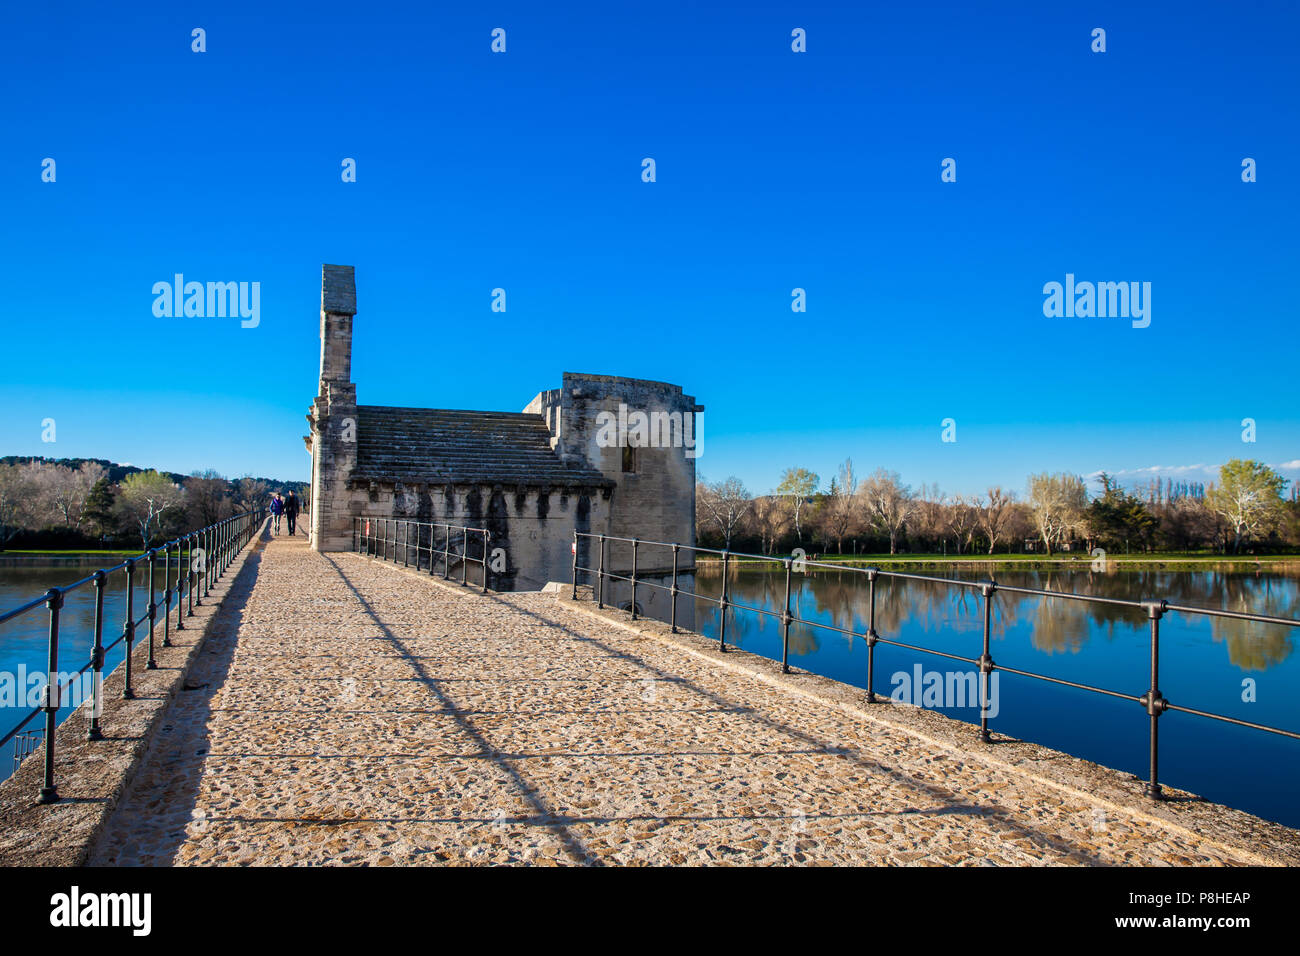 Auch die berühmte Brücke von Avignon Pont Saint-Benezet bei Avignon Frankreich Stockfoto